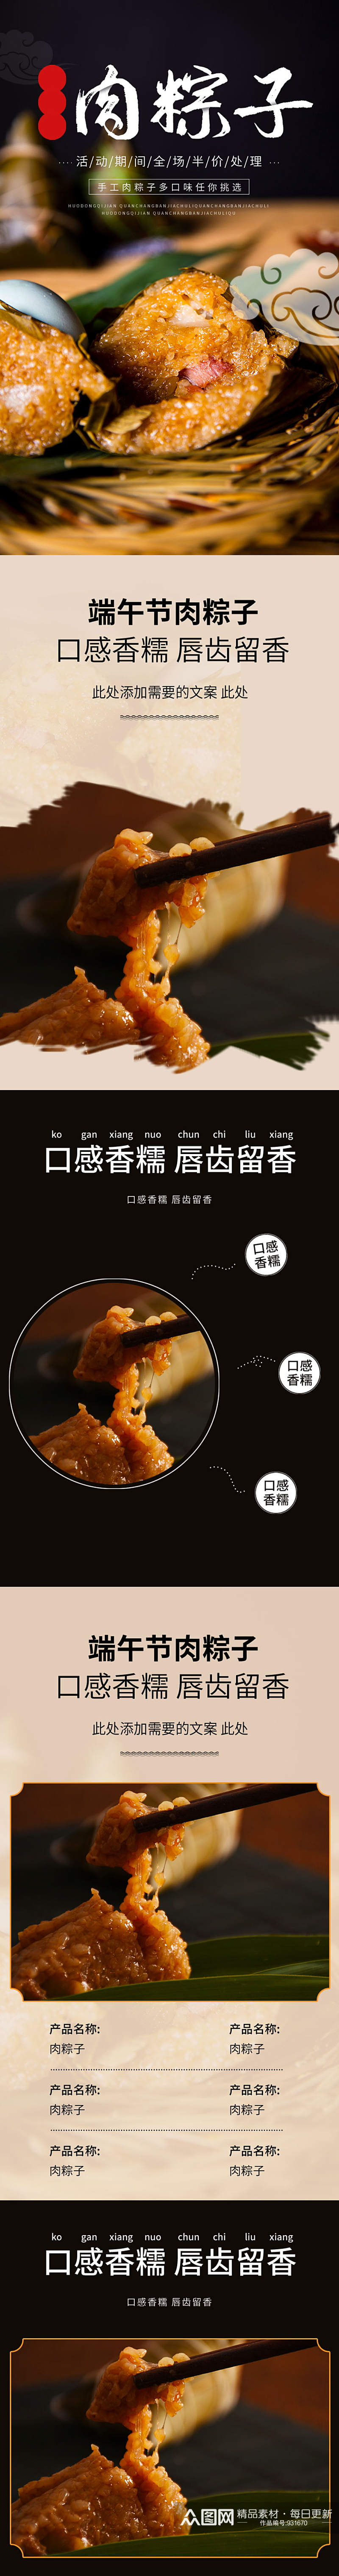 淘宝端午节肉馅粽子复古中国风详情页素材